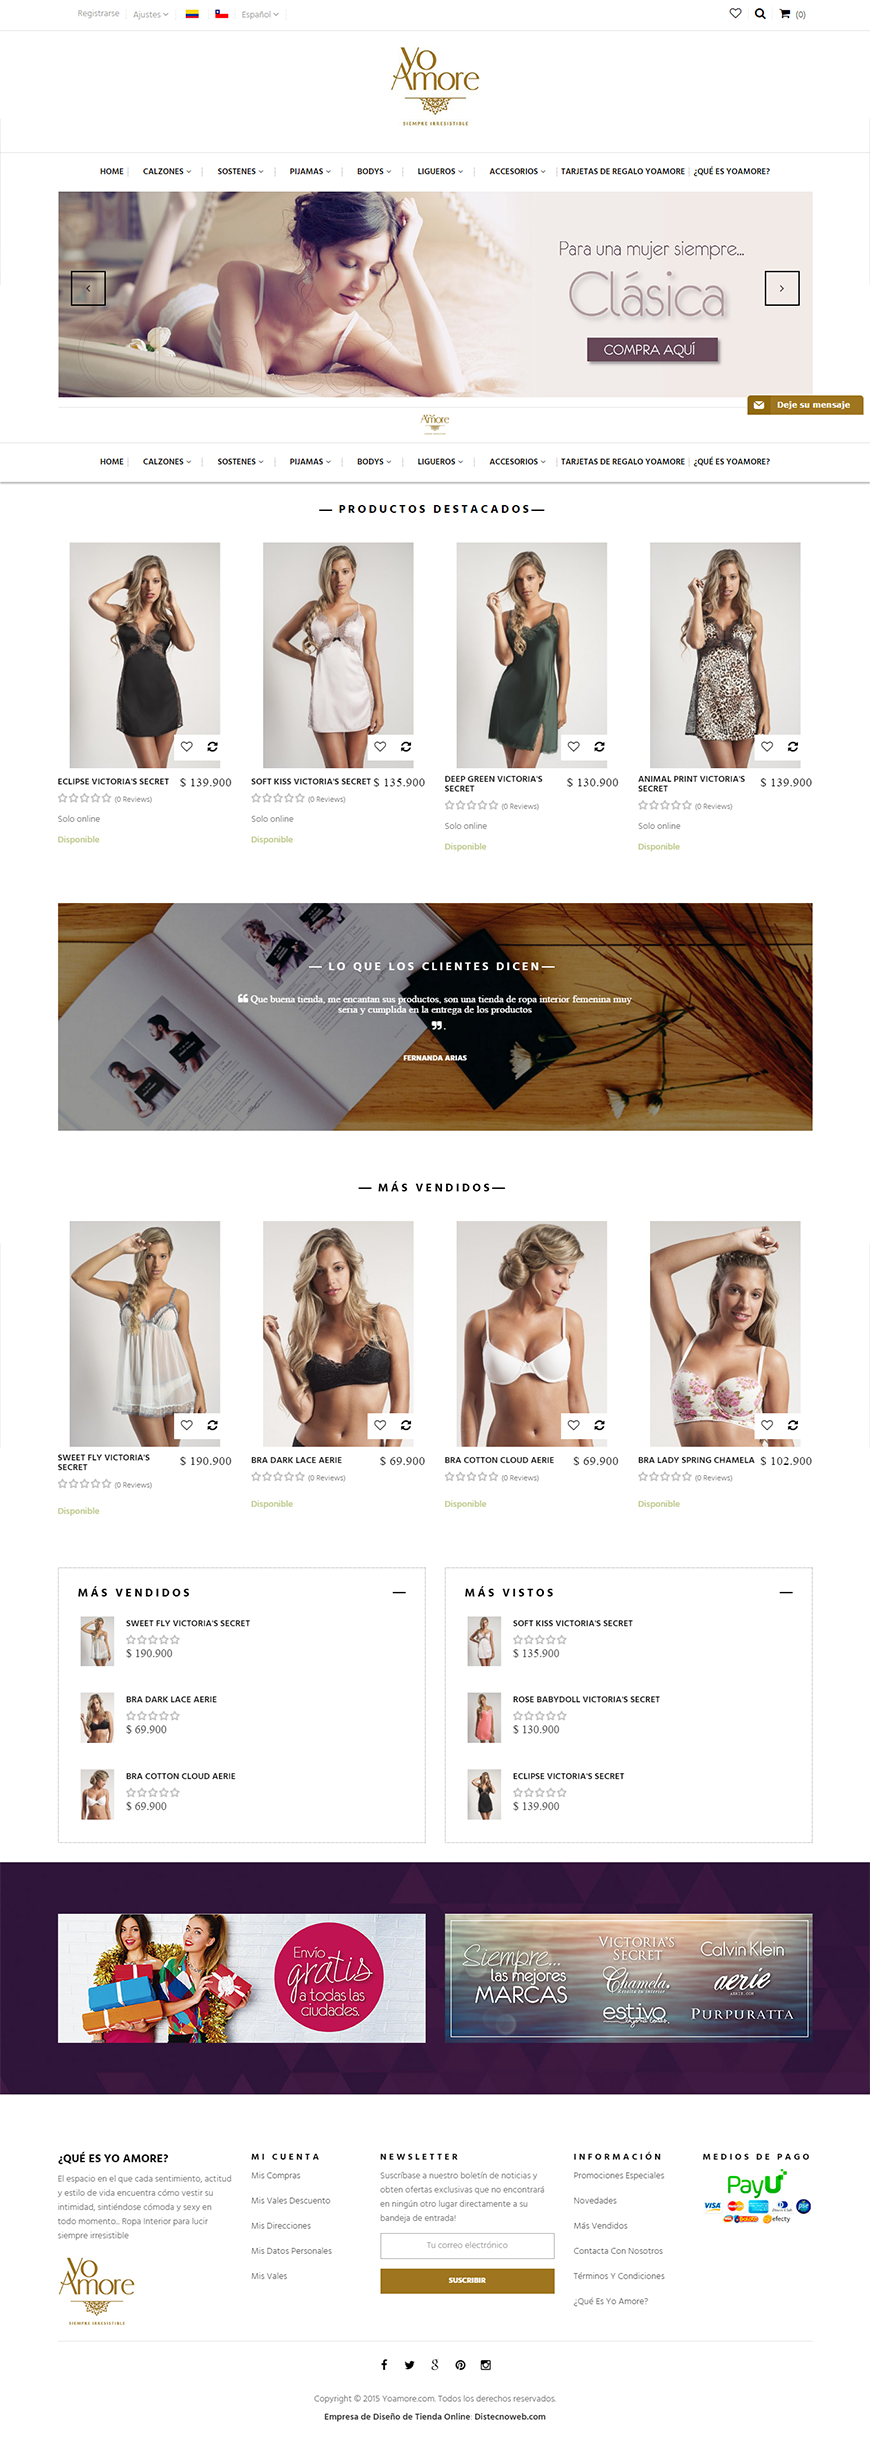 Tienda Online especializada en la venta de ropa interior para mujeres